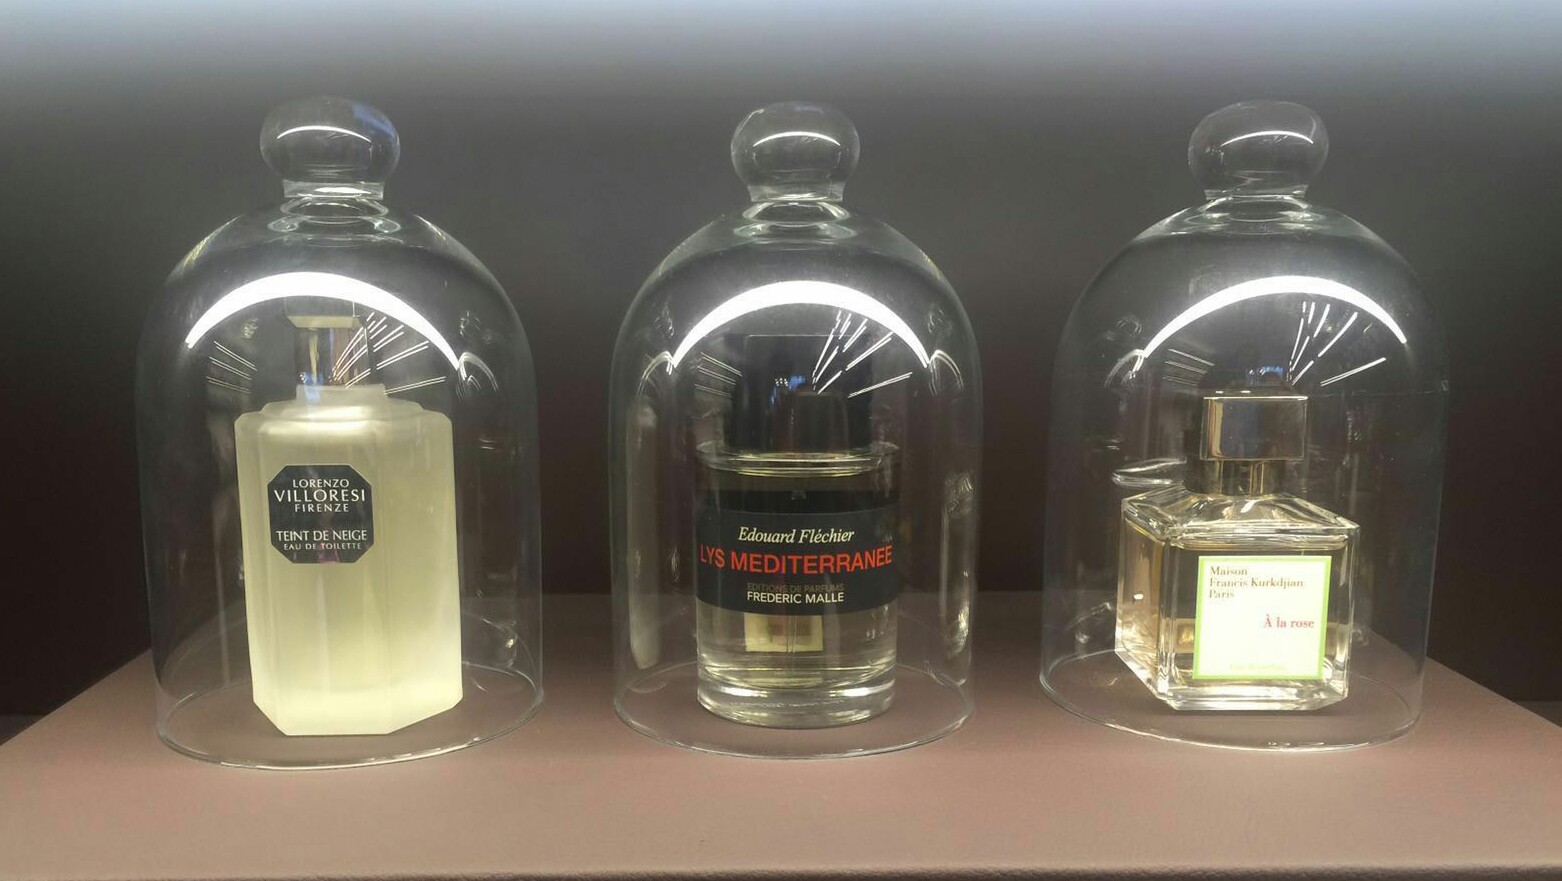 Perfumes Nicho Recomendados Mayo 2016